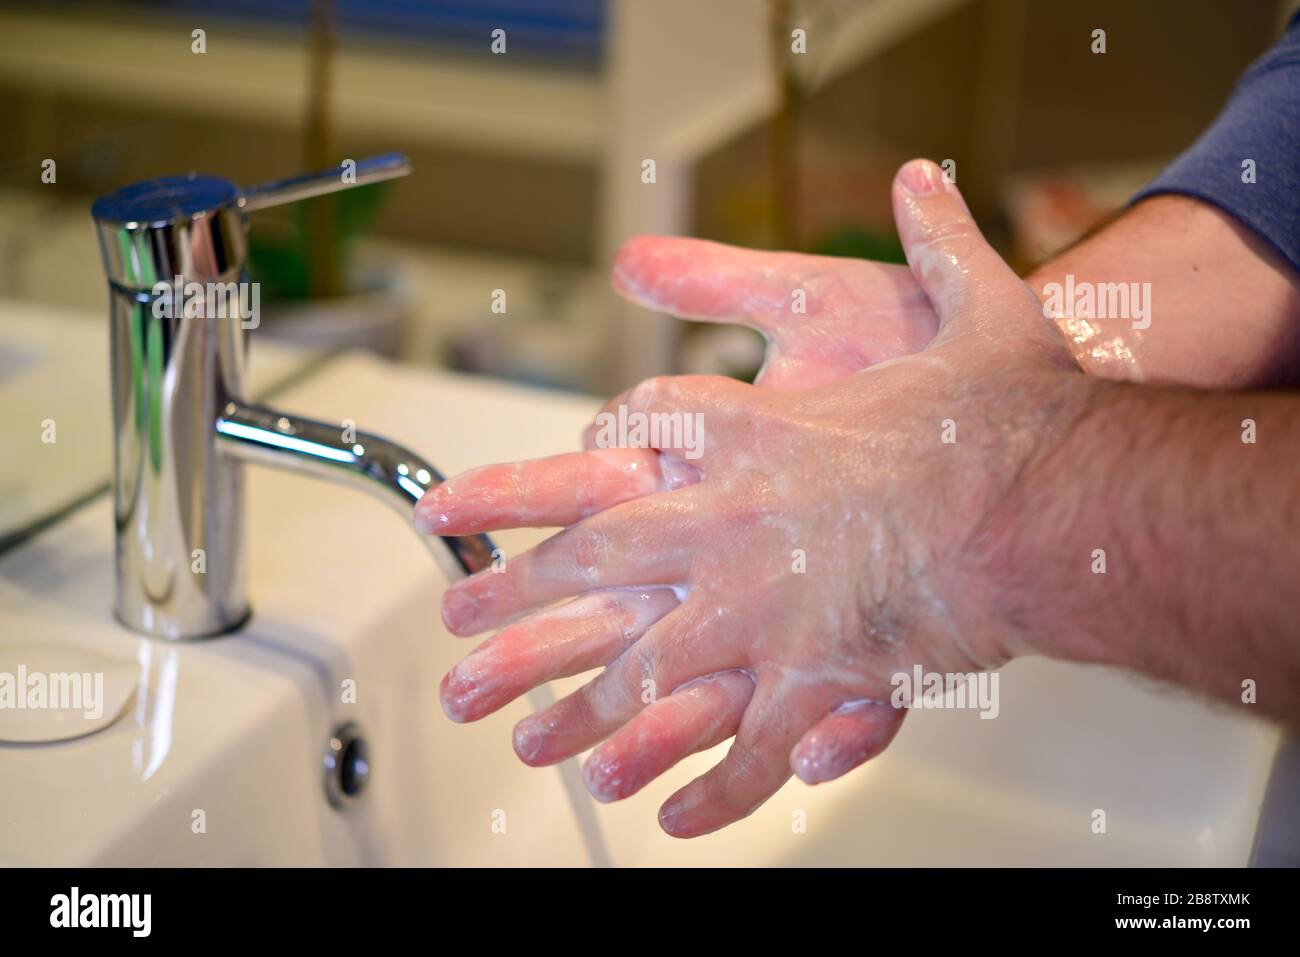 Hände regelmäßig 20 Sekunden lang waschen, um sich vor Coronavirus COVID-19 zu schützen Stockfoto